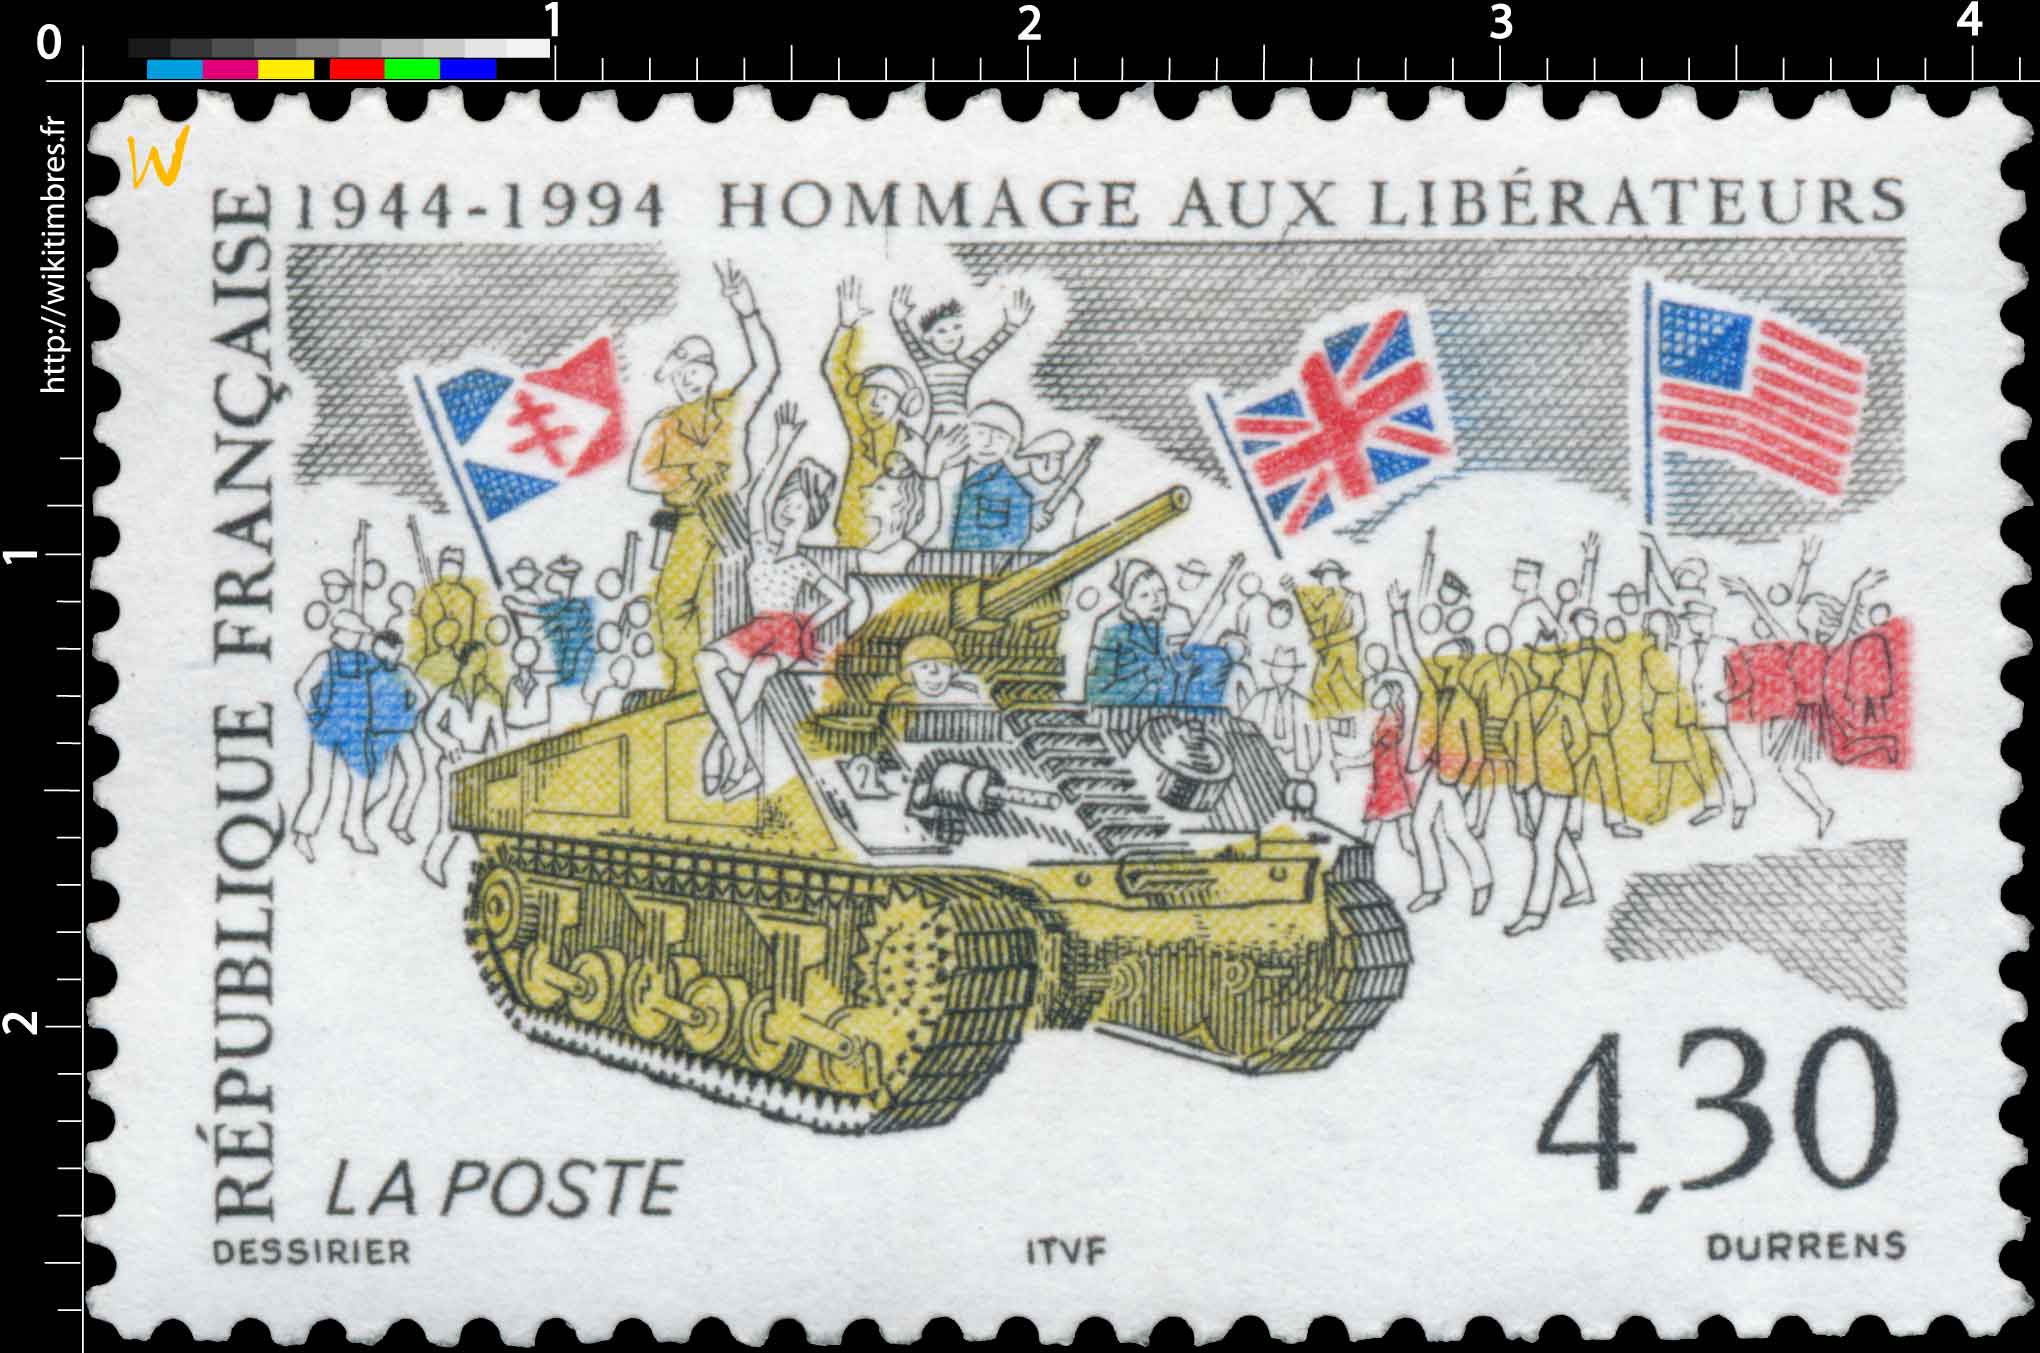 HOMMAGE AUX LIBÉRATEURS 1944-1994